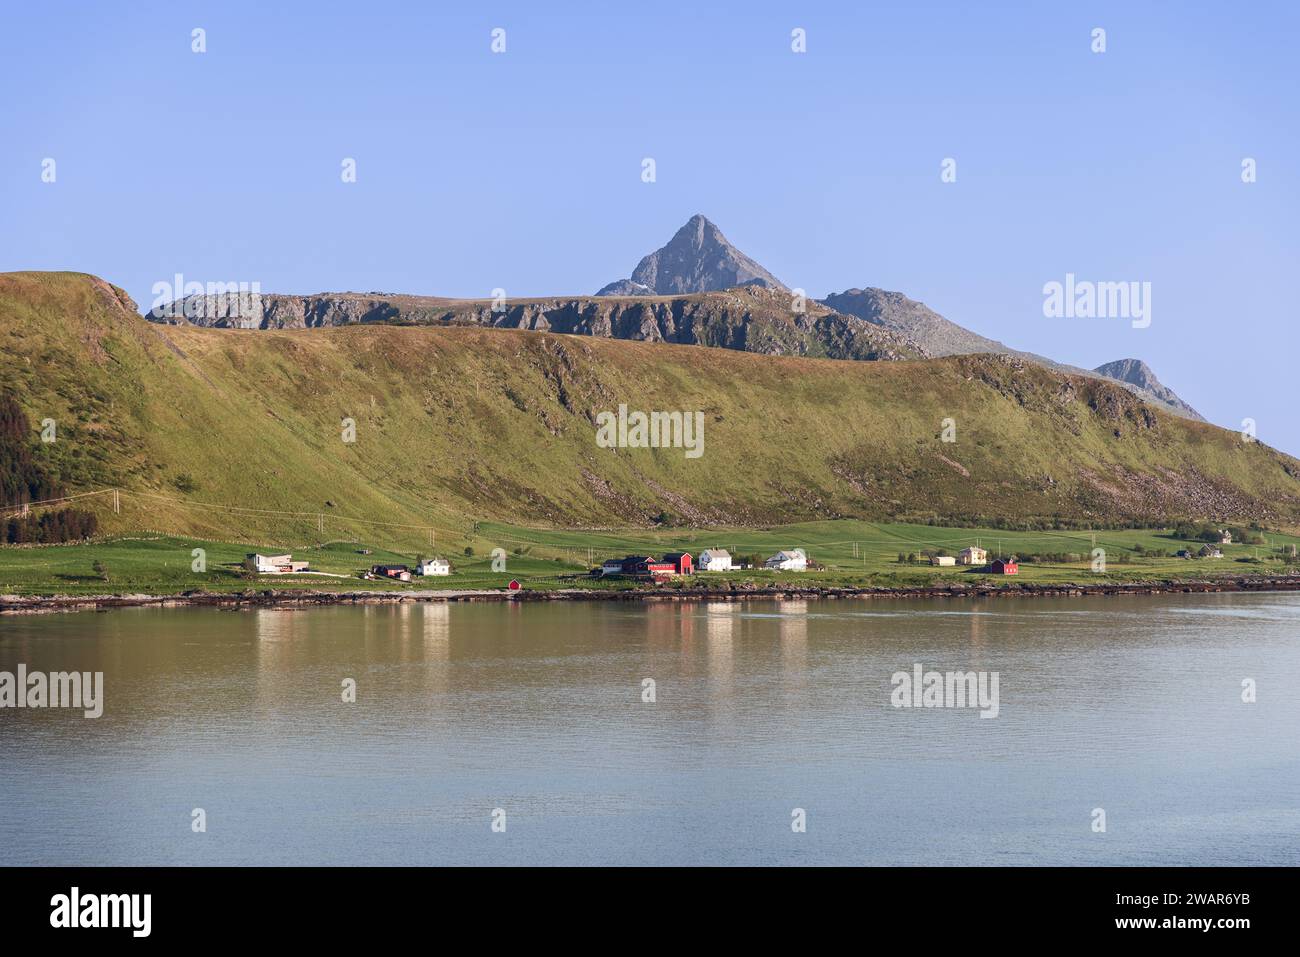 Das ruhige Wasser spiegelt die bergige Landschaft von Lofoten, Norwegen, mit farbenfrohen Häusern an der Küste wider. Offersoya, Nordland, Norwegen Stockfoto